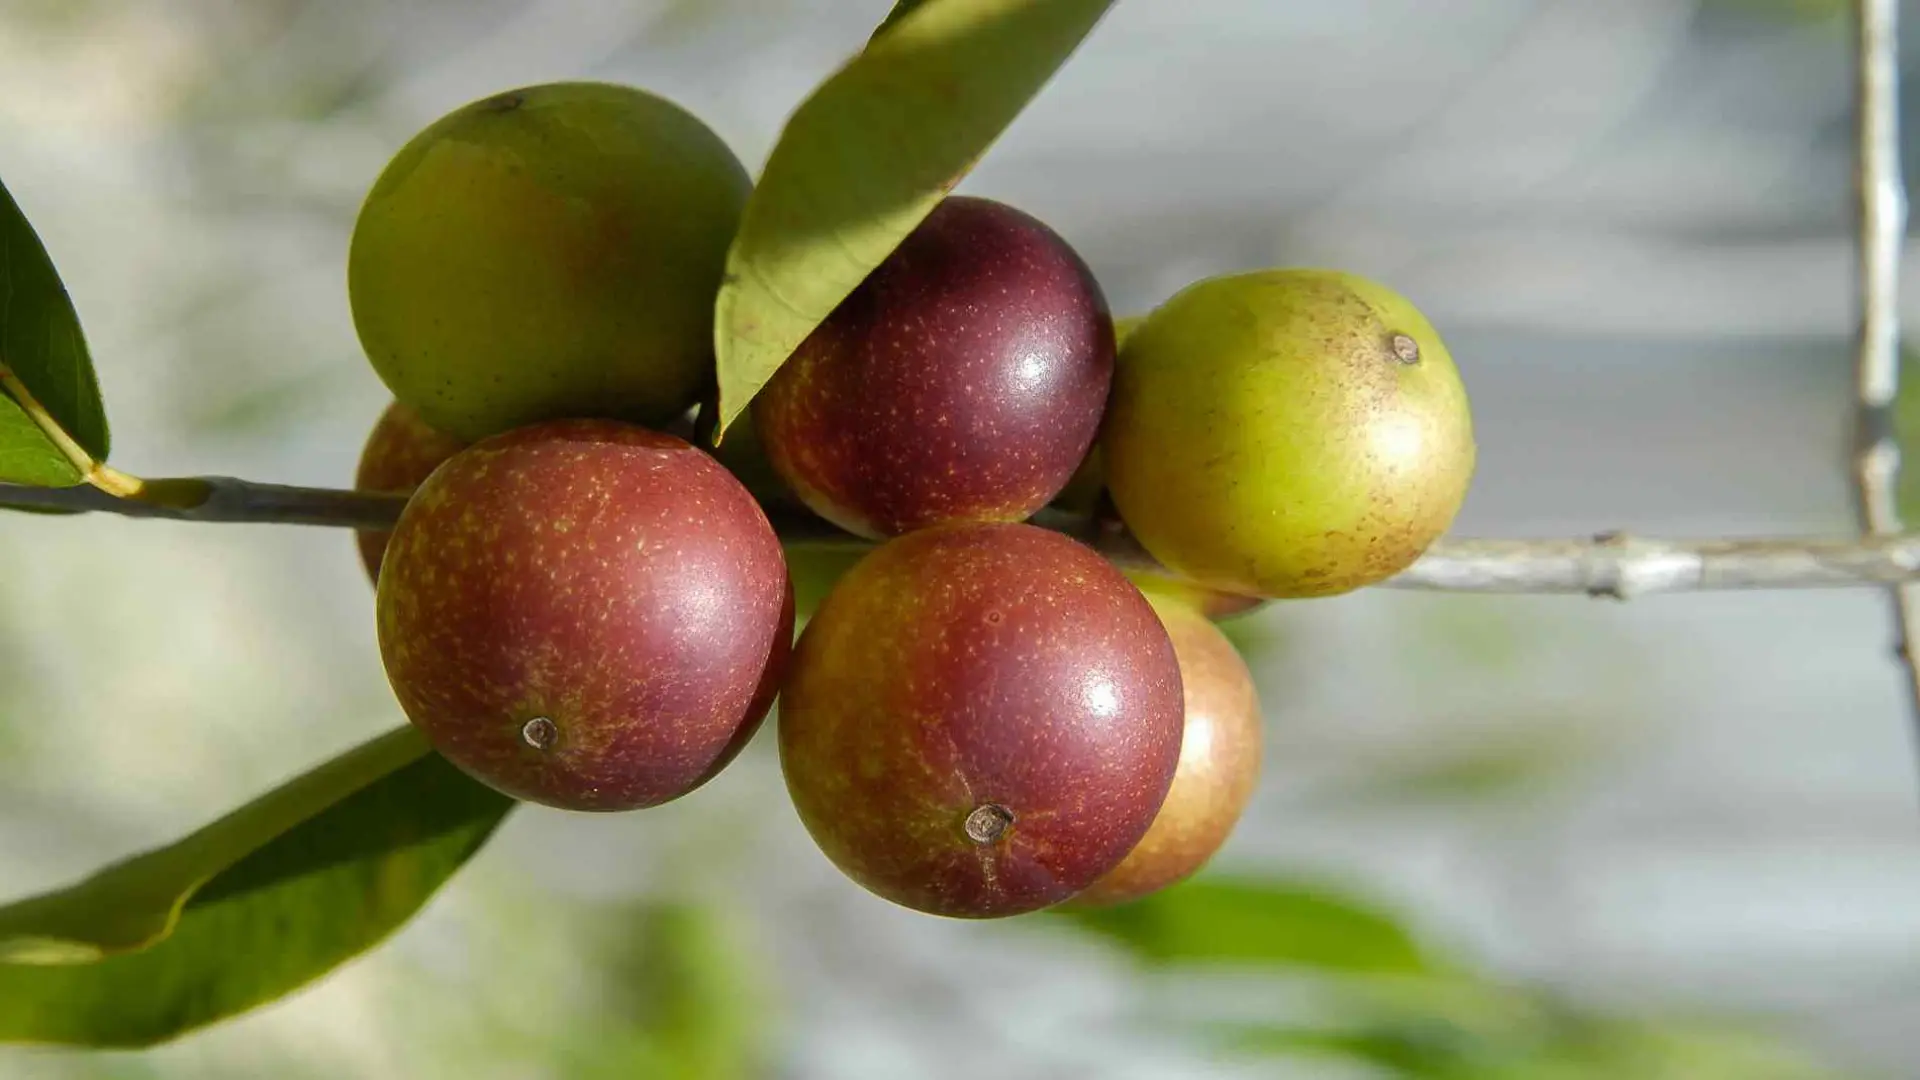 descubre-el-fruto-amazonico-con-60-veces-mas-vitamina-c-que-la-naranja-para-fortalecer-la-salud